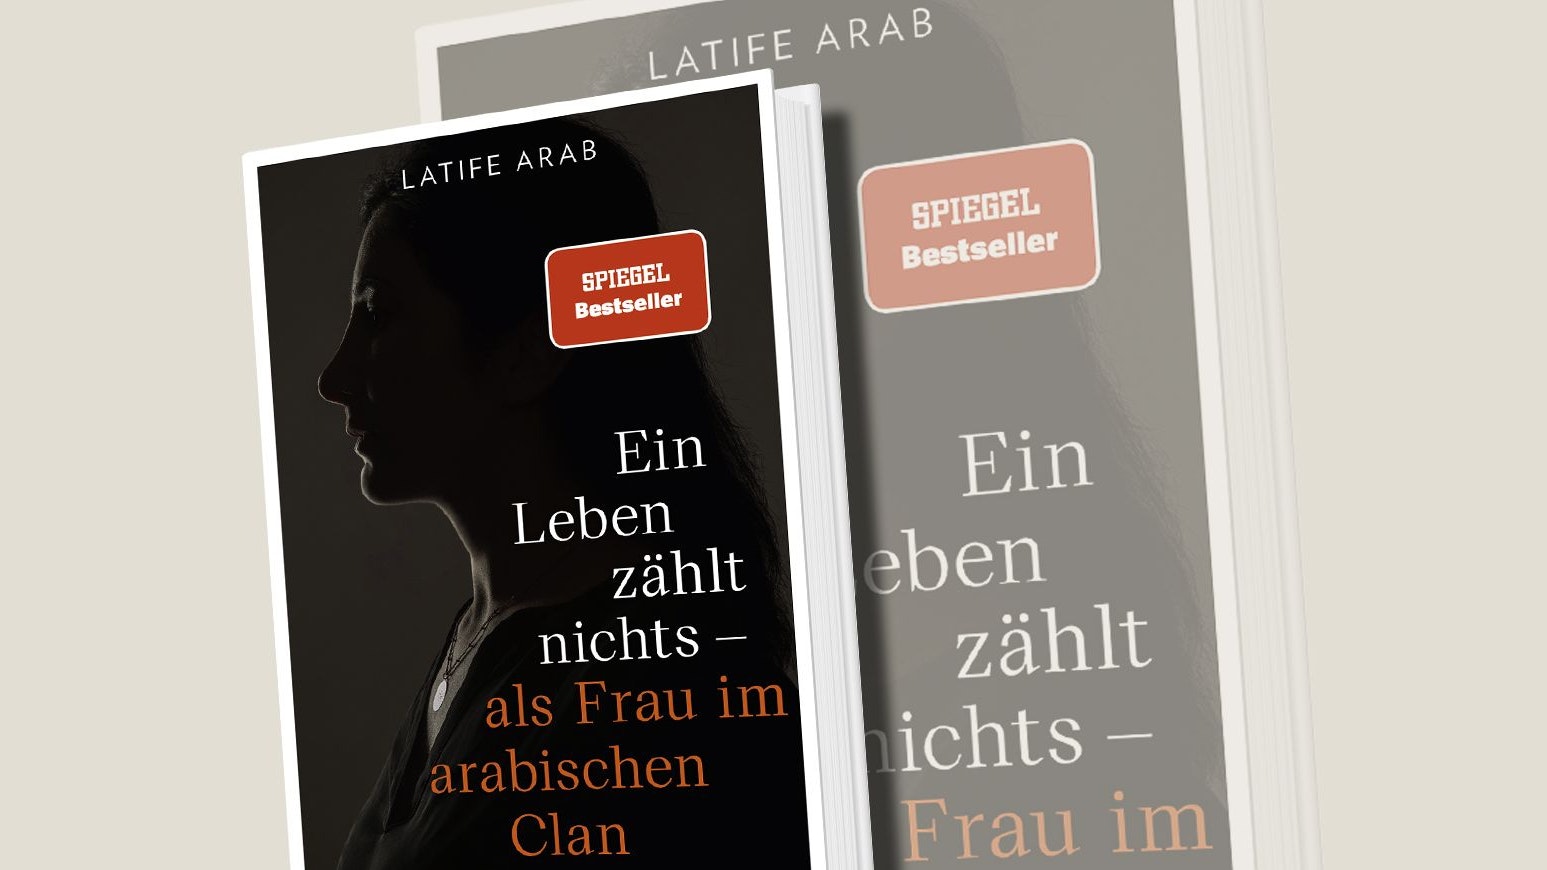 Latife Arab, "Ein Leben zählt nichts – als Frau im arabischen Clan", Heyne, 22 Euro